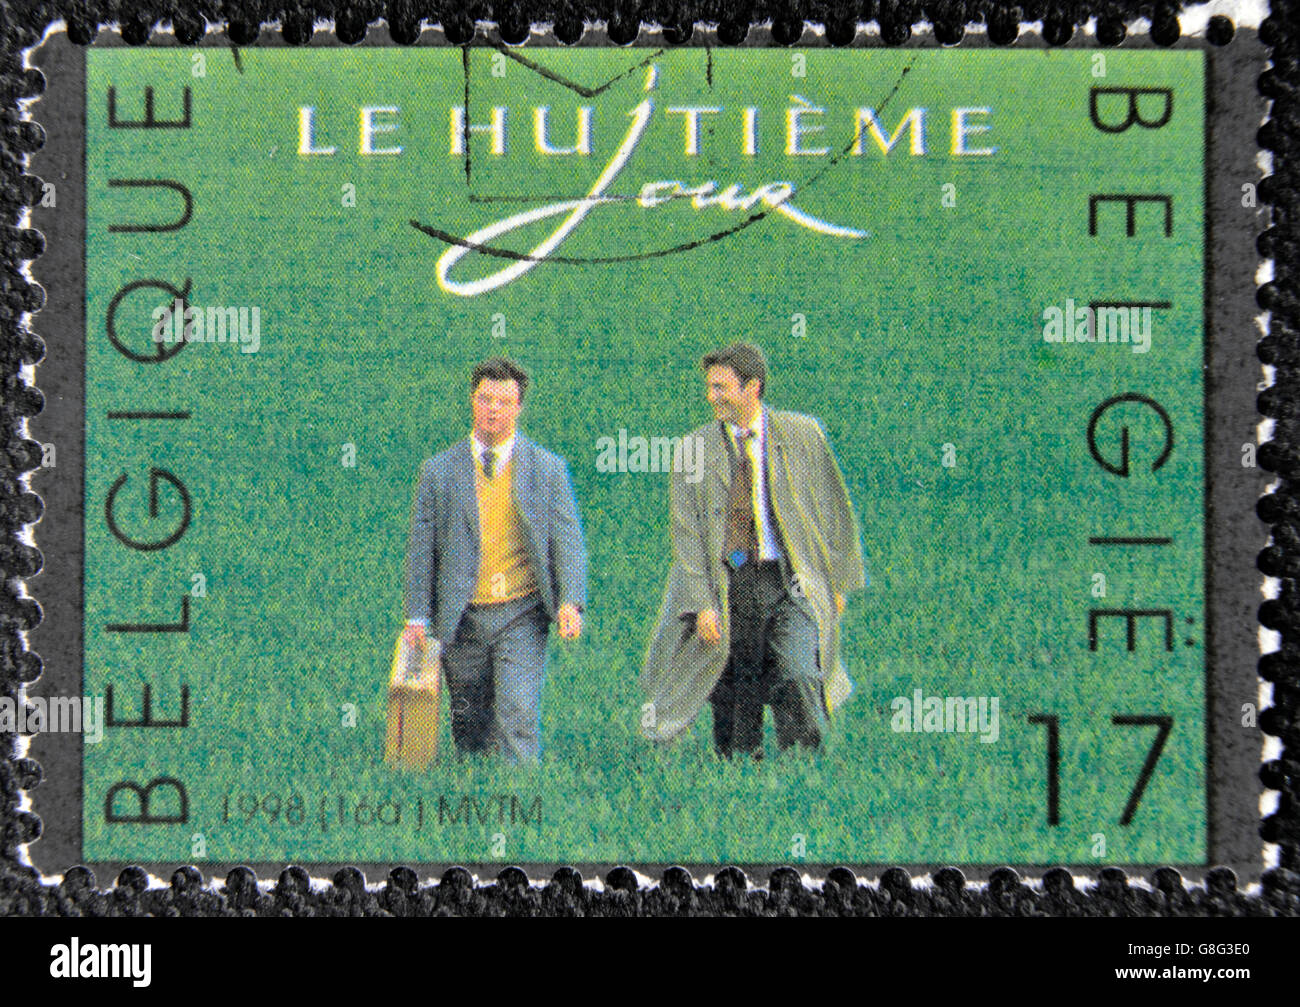 Belgique - circa 1998 : timbre imprimé en Belgique présente le huitième jour (film), vers 1998 Banque D'Images